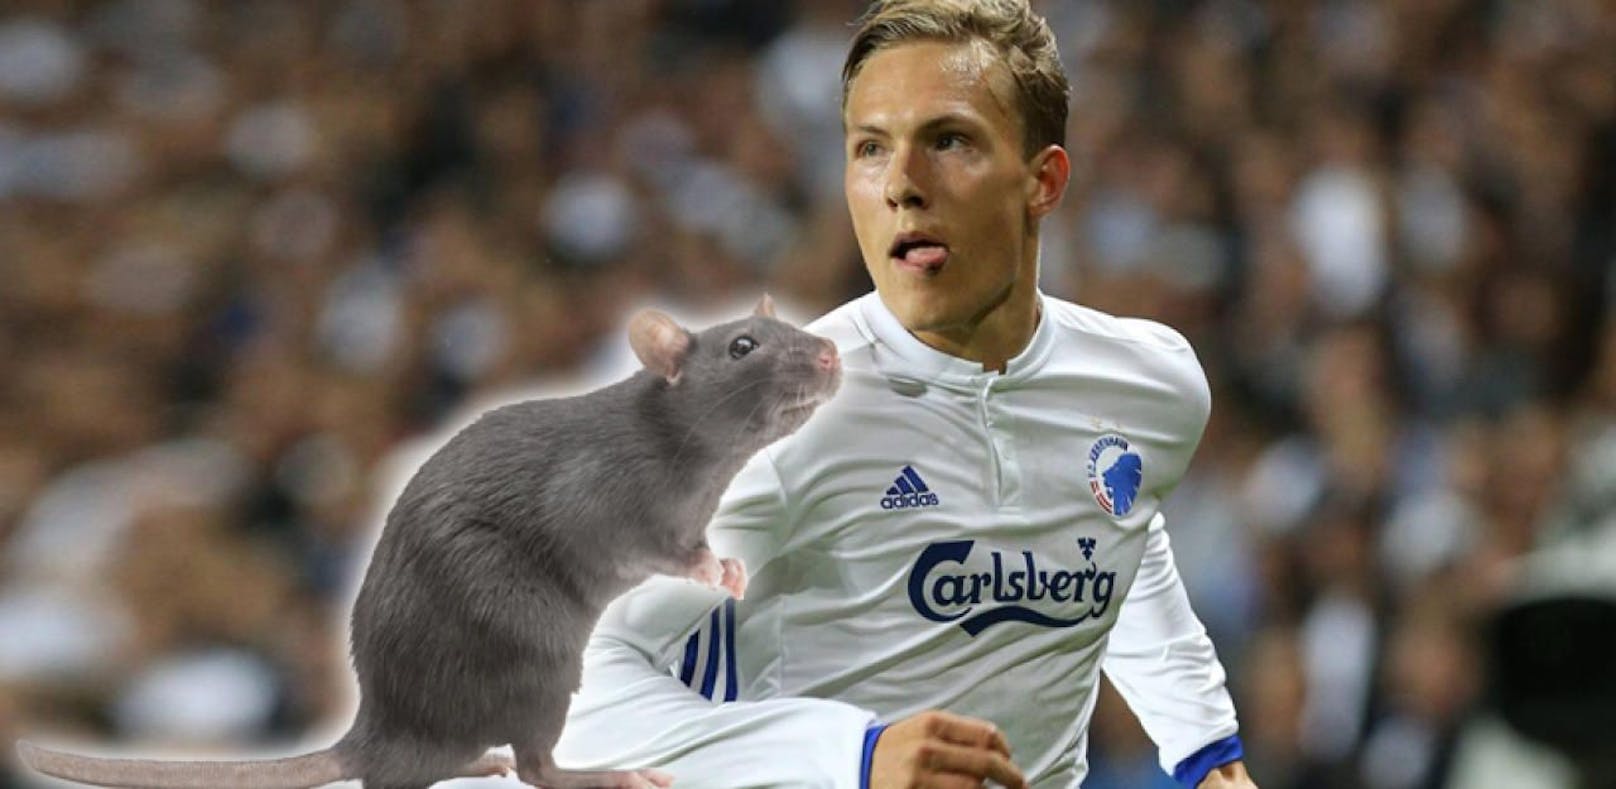 Heftig! Fans bewerfen Spieler mit toten Ratten